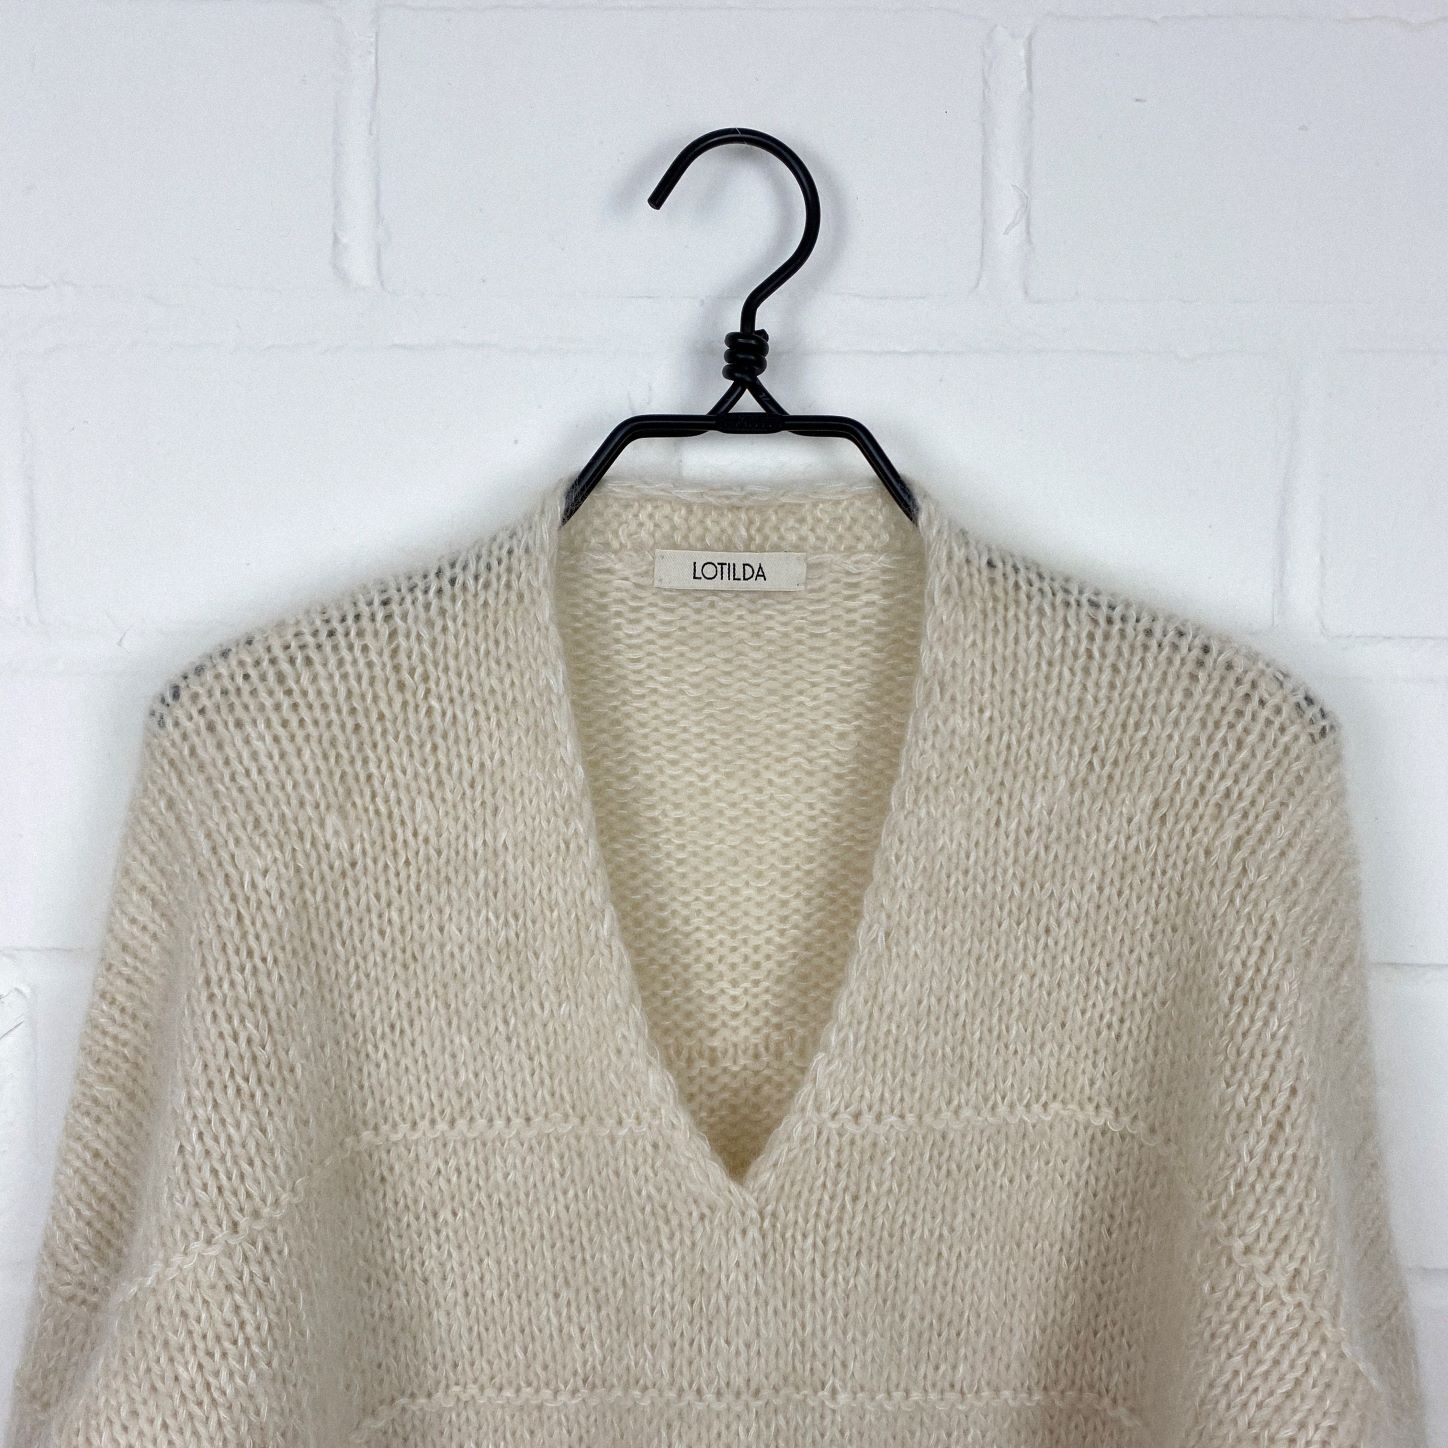 Knitting pattern - Knit Top ELLA - sizes S, M, L, XL - No.222E